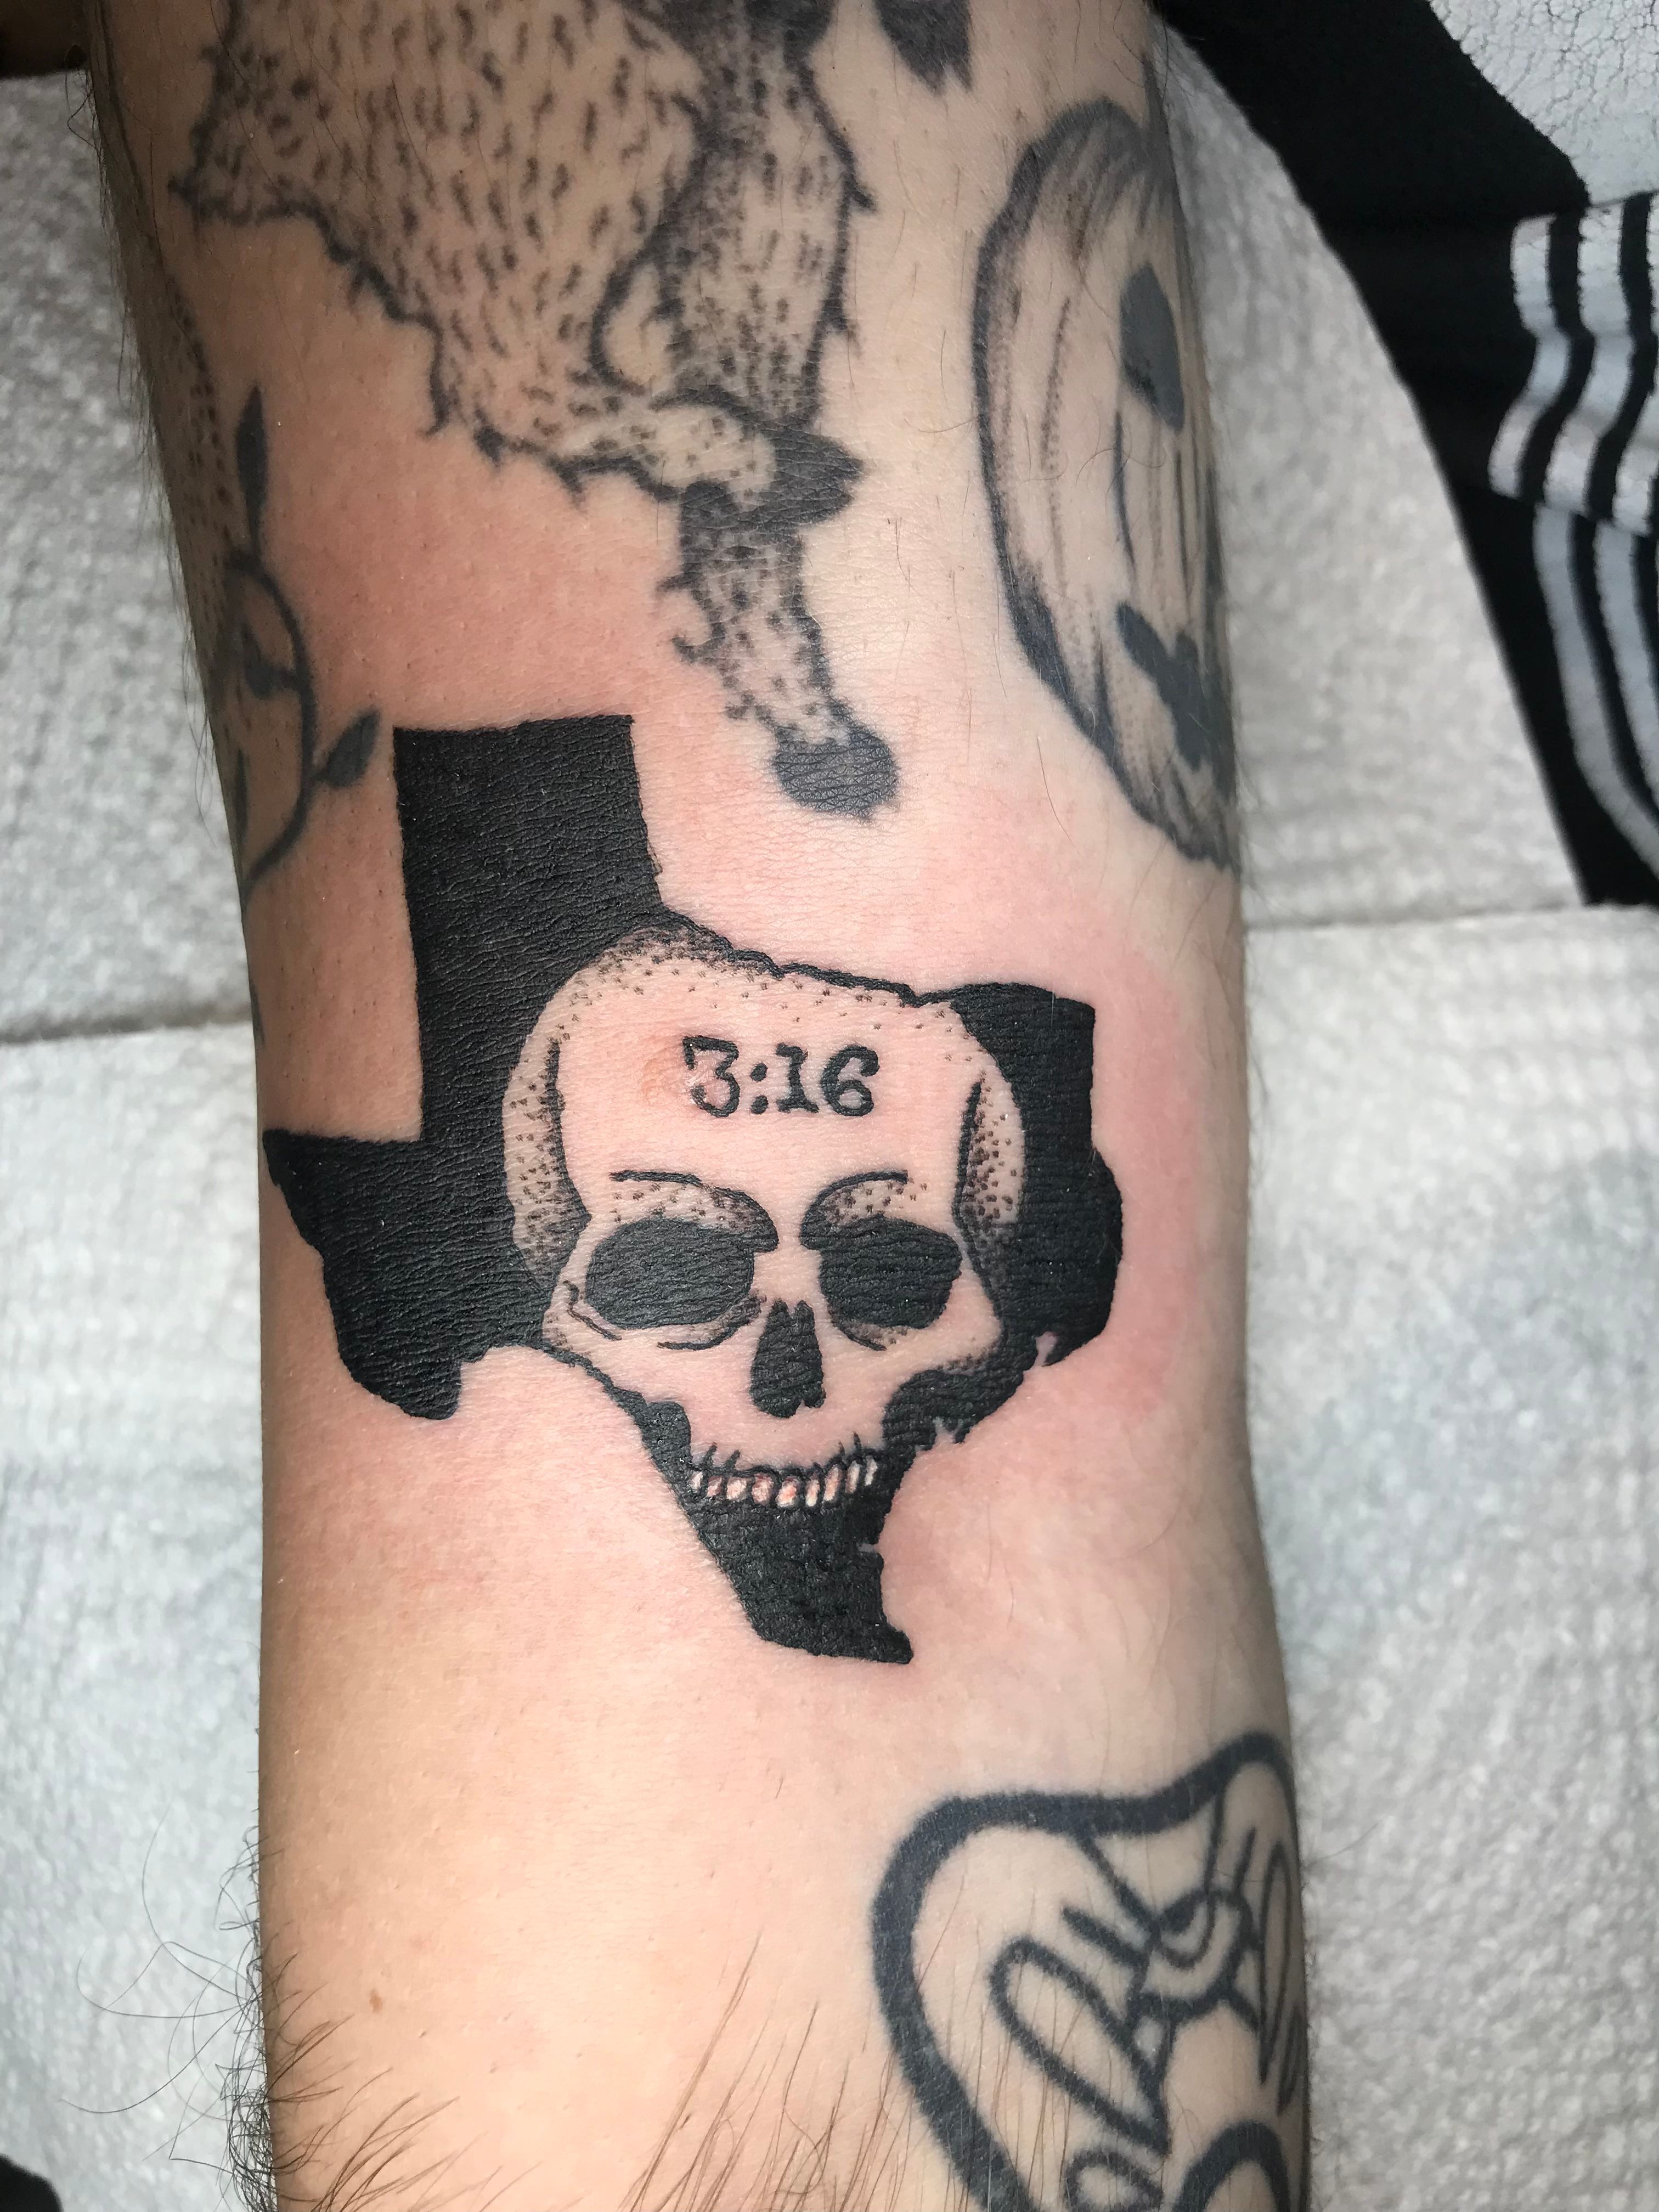 austin 3:16 tattoo